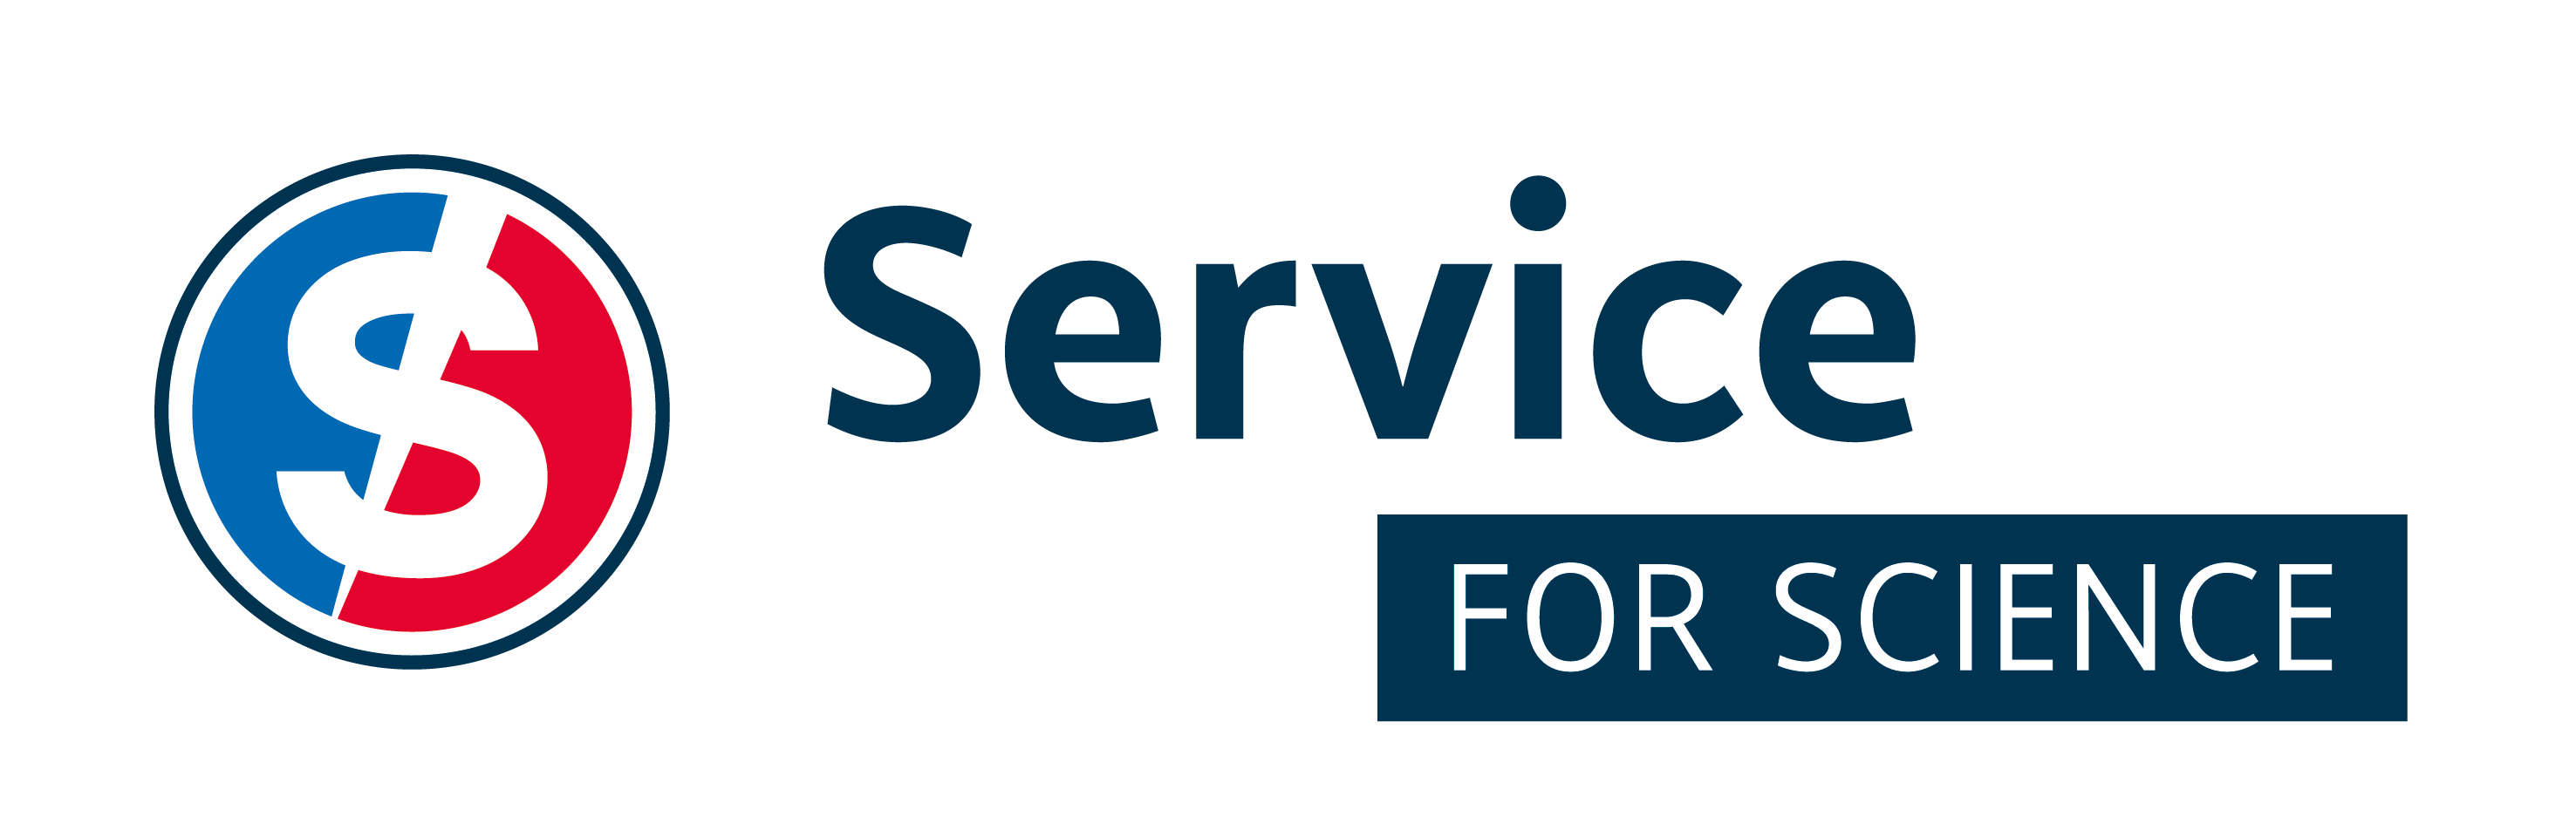 Logo ServiceforScience 1